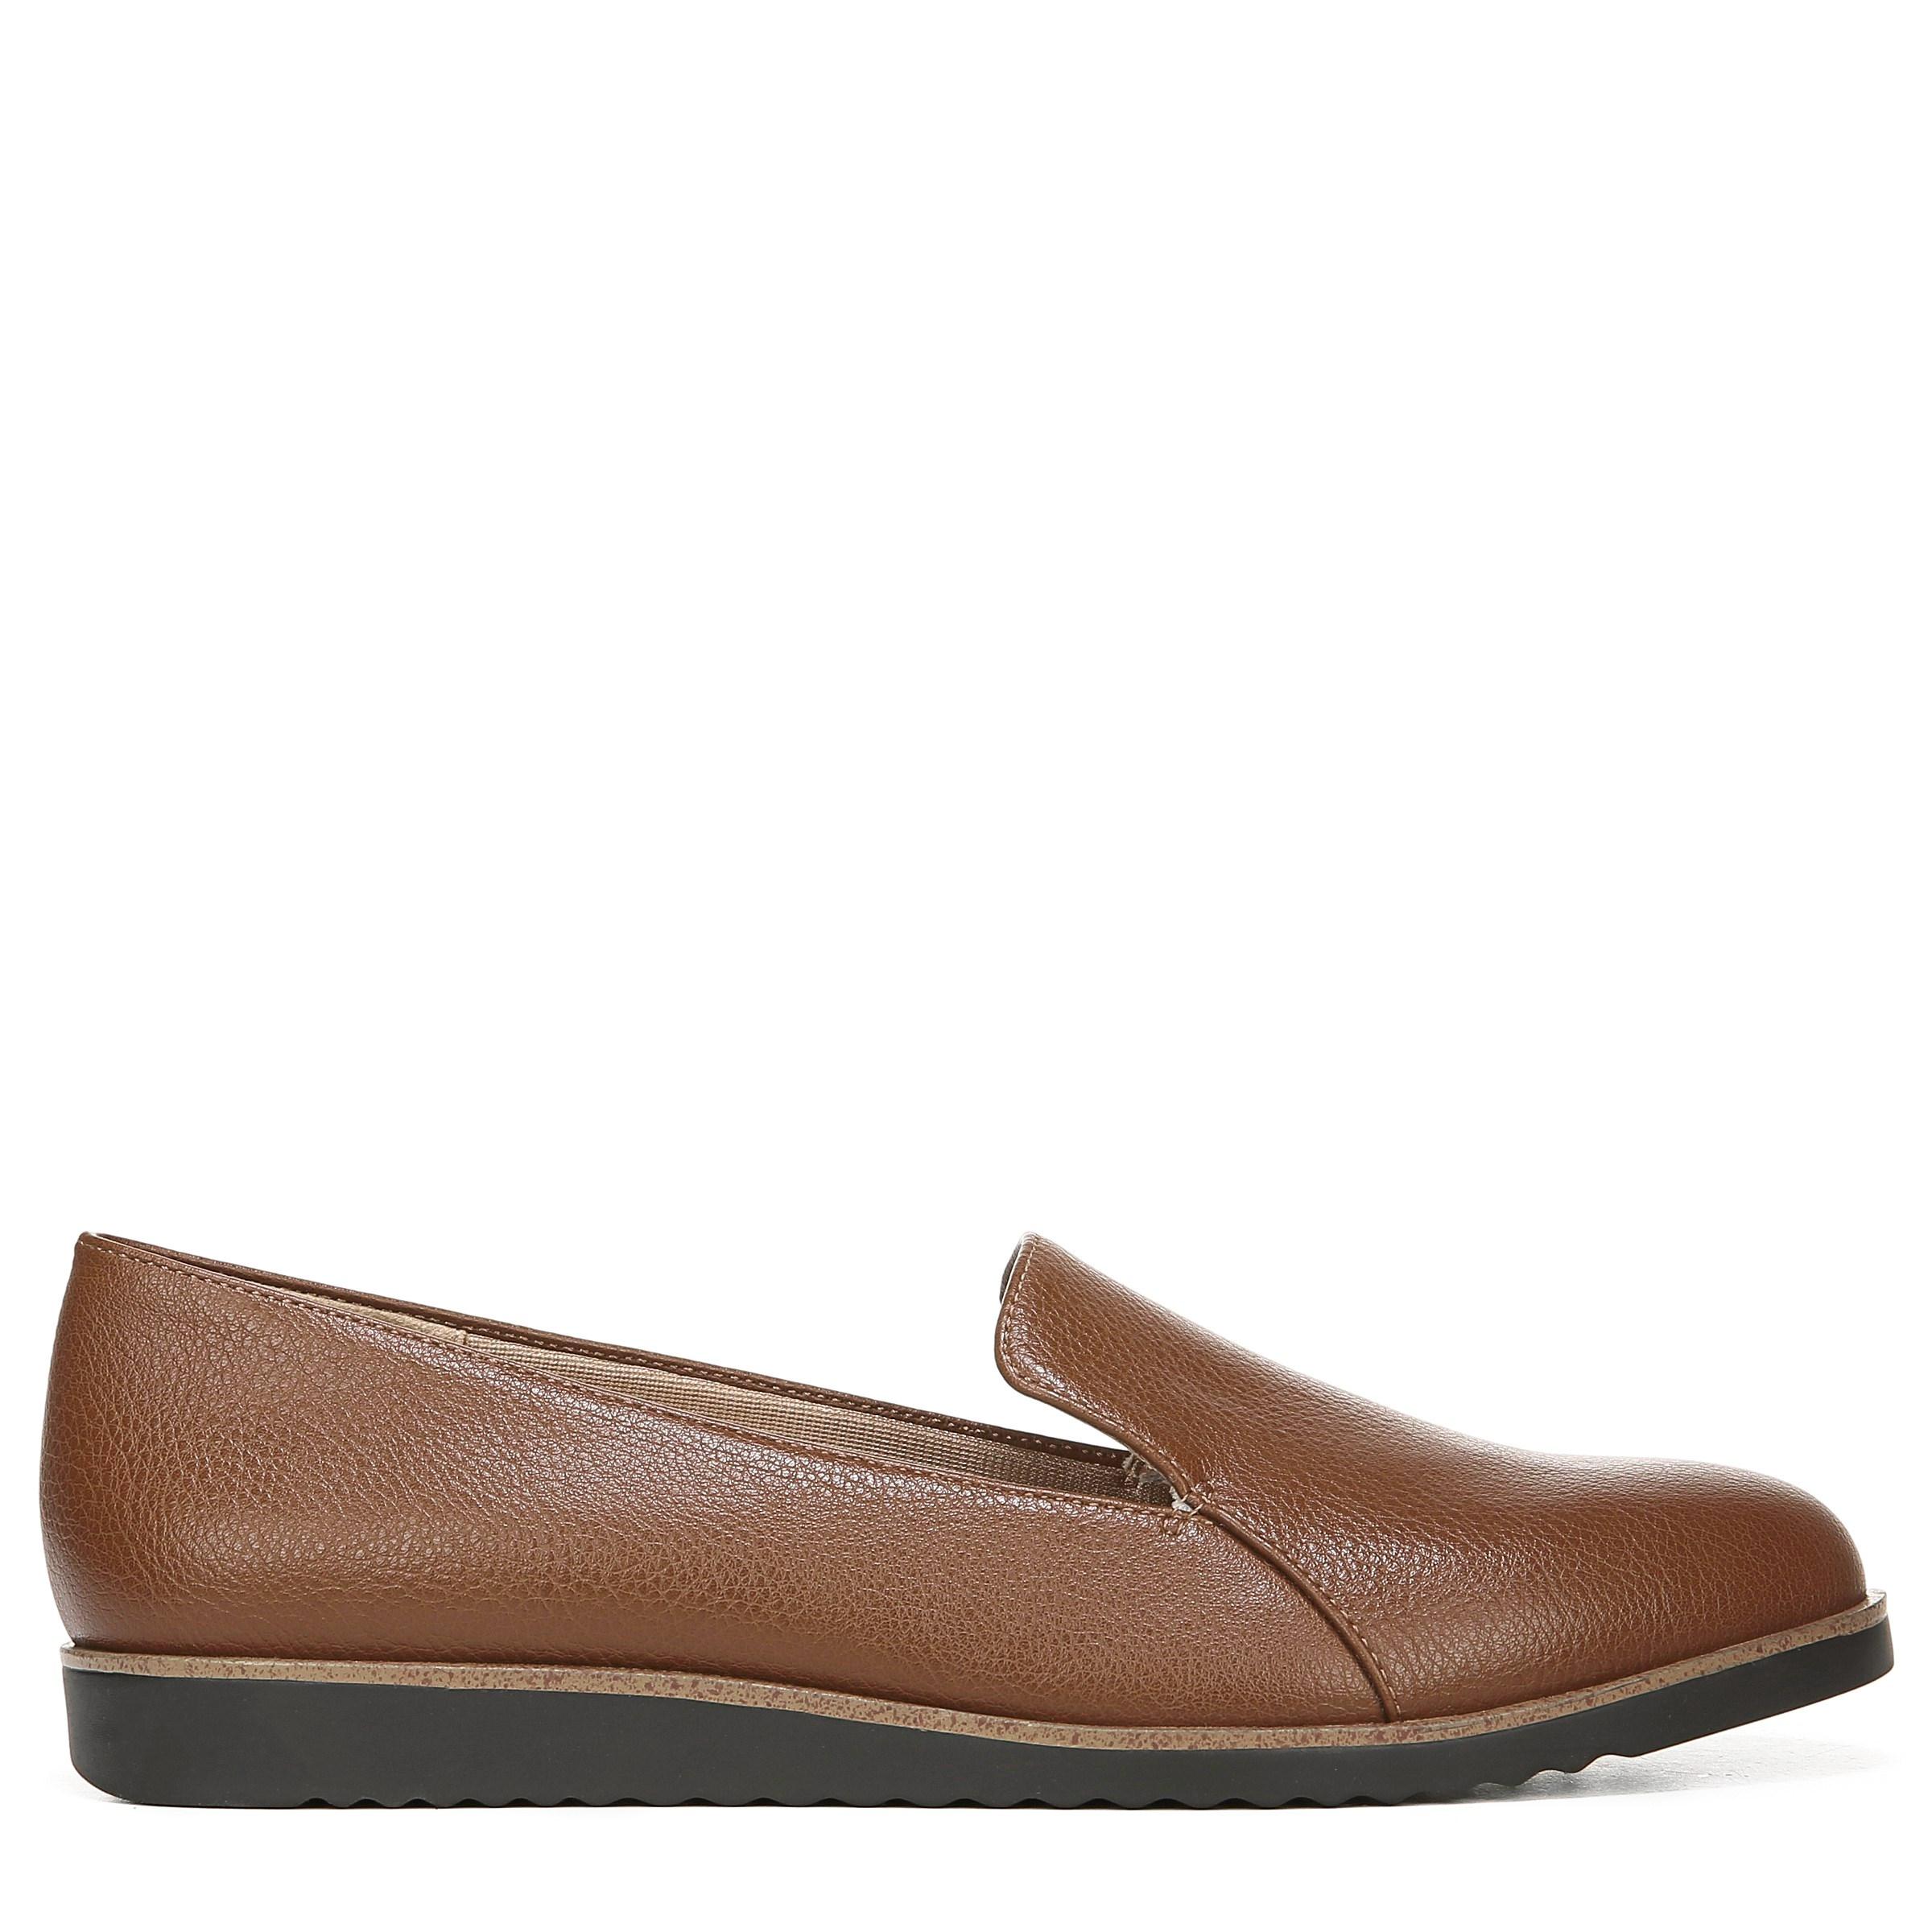 LifeStride Zendaya Medium/wide Loafers in Walnut Brown (Brown) - Lyst